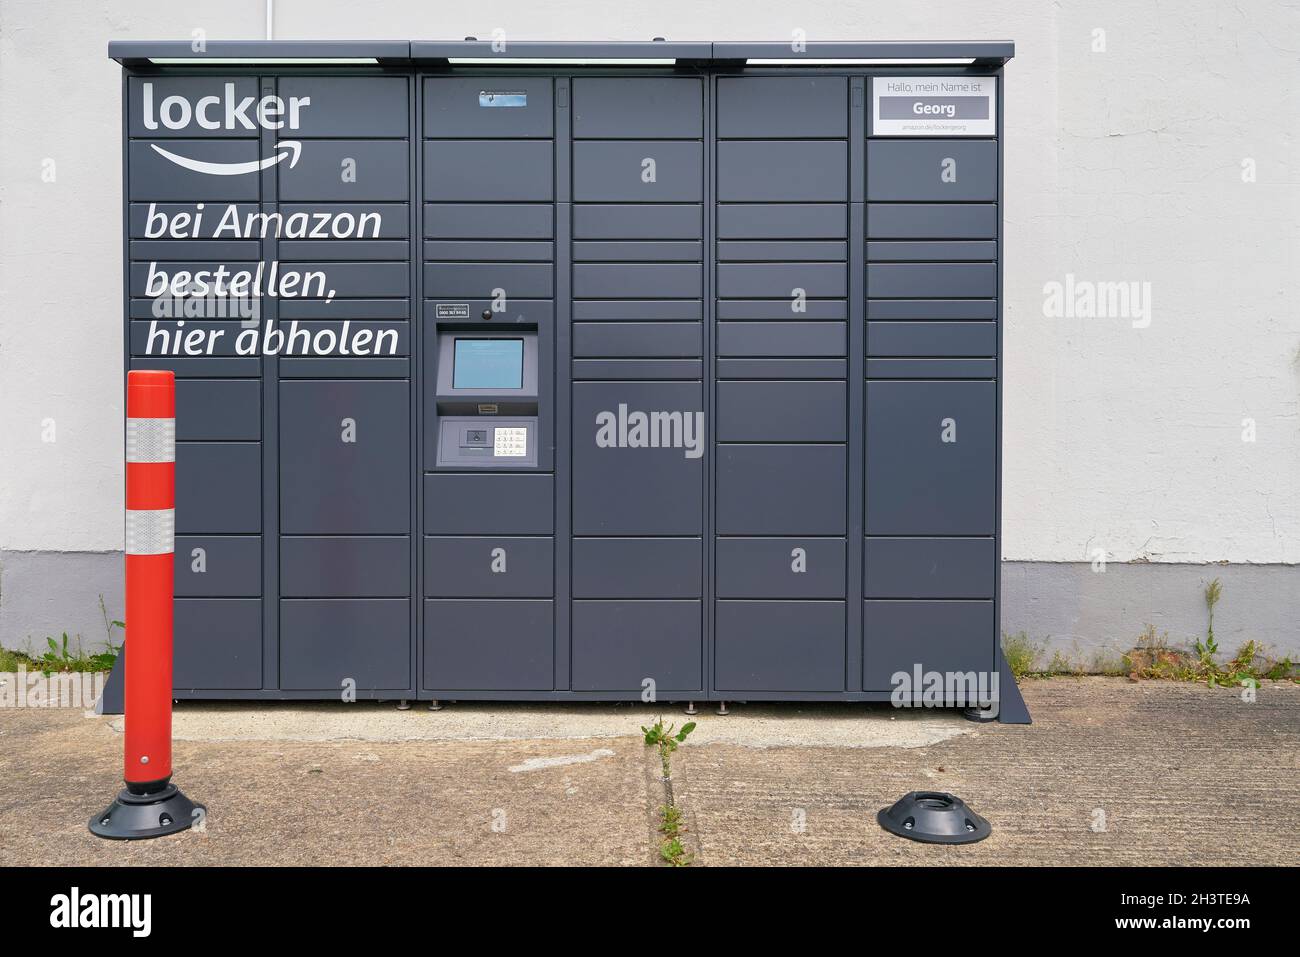 Amazon Locker Estación de recogida con taquillas para paquetes de la empresa de pedidos por correo Amazon en Alemania Foto de stock